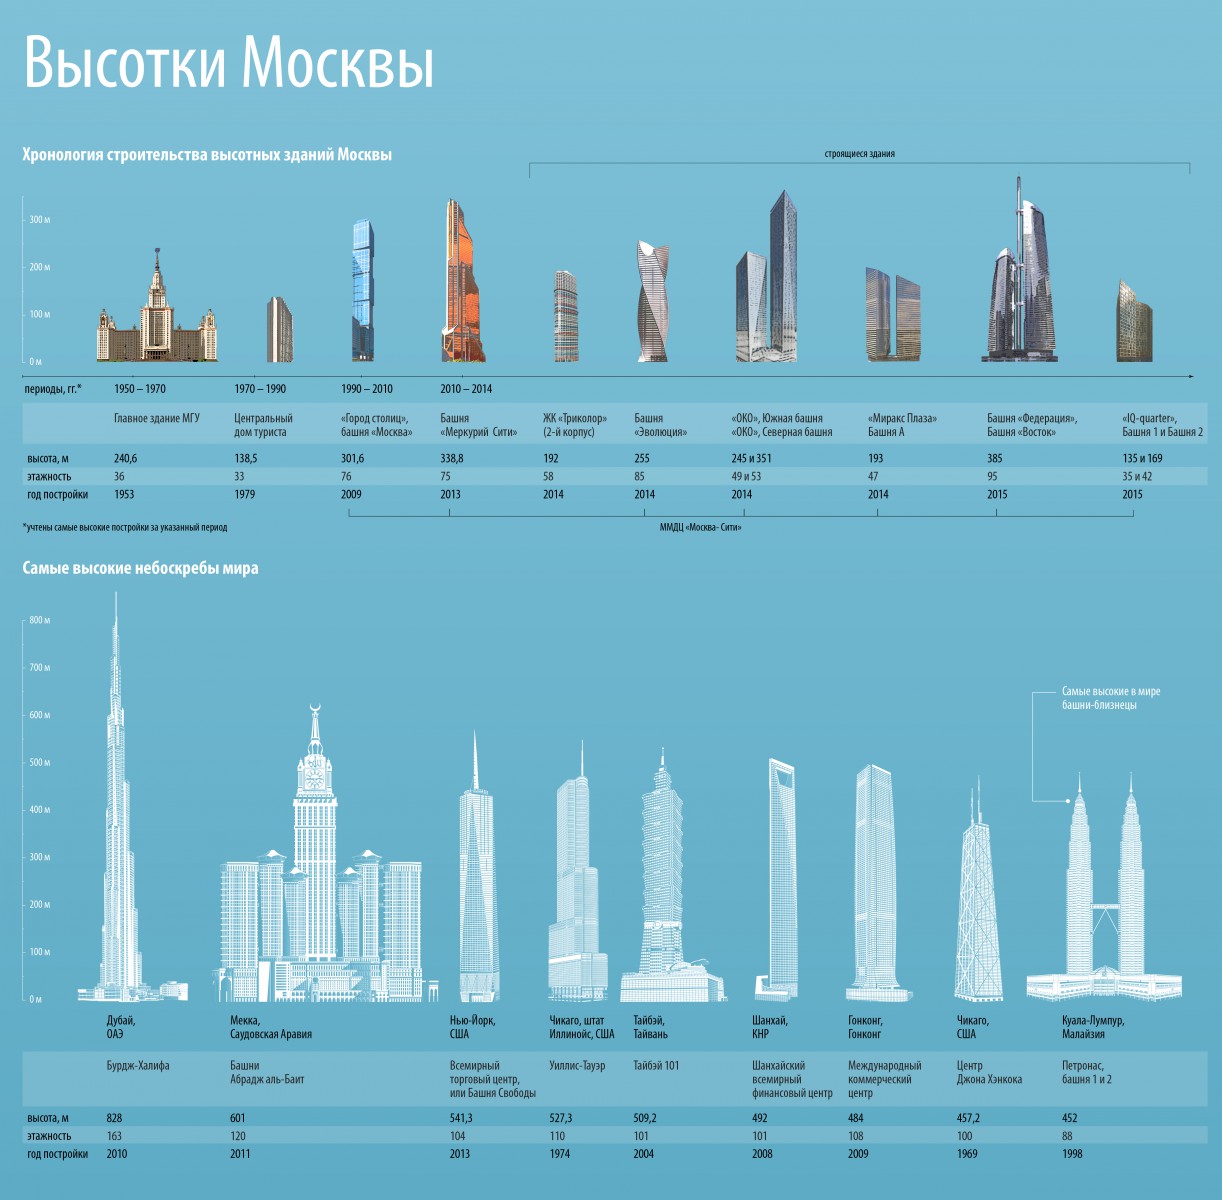 высотки сталинки в москве на карте москвы